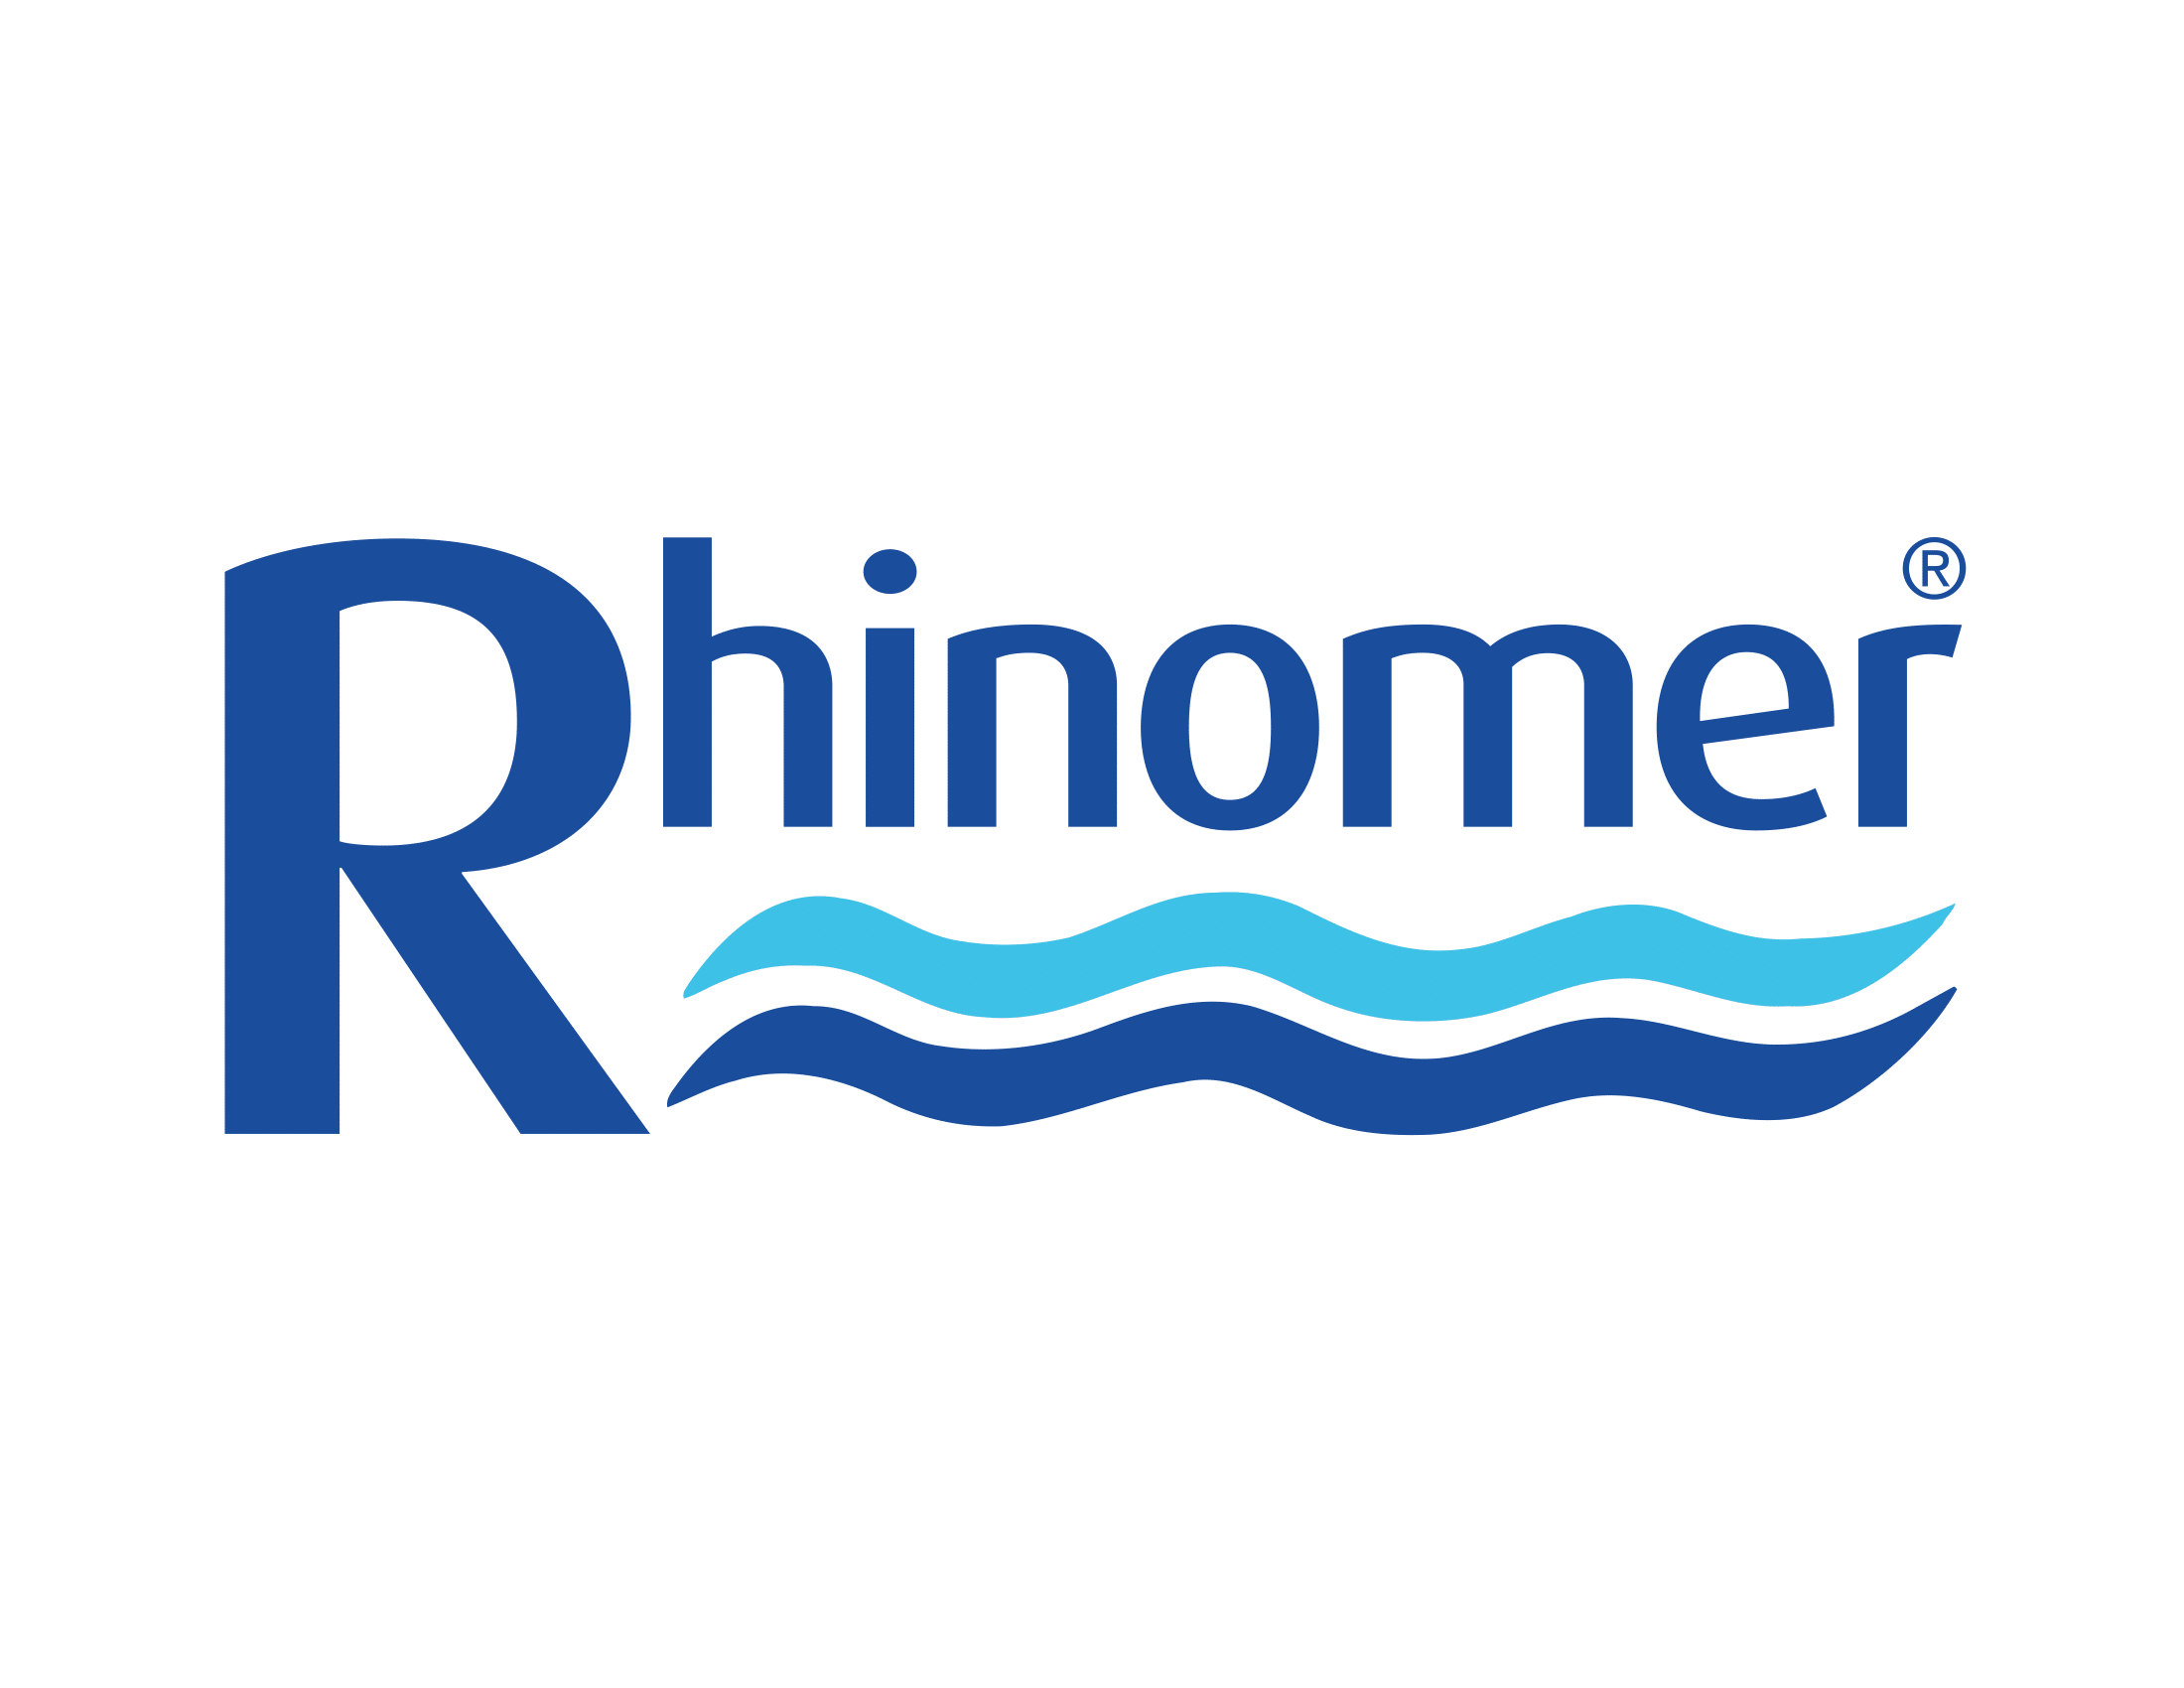 RHINOMER LOGO 1